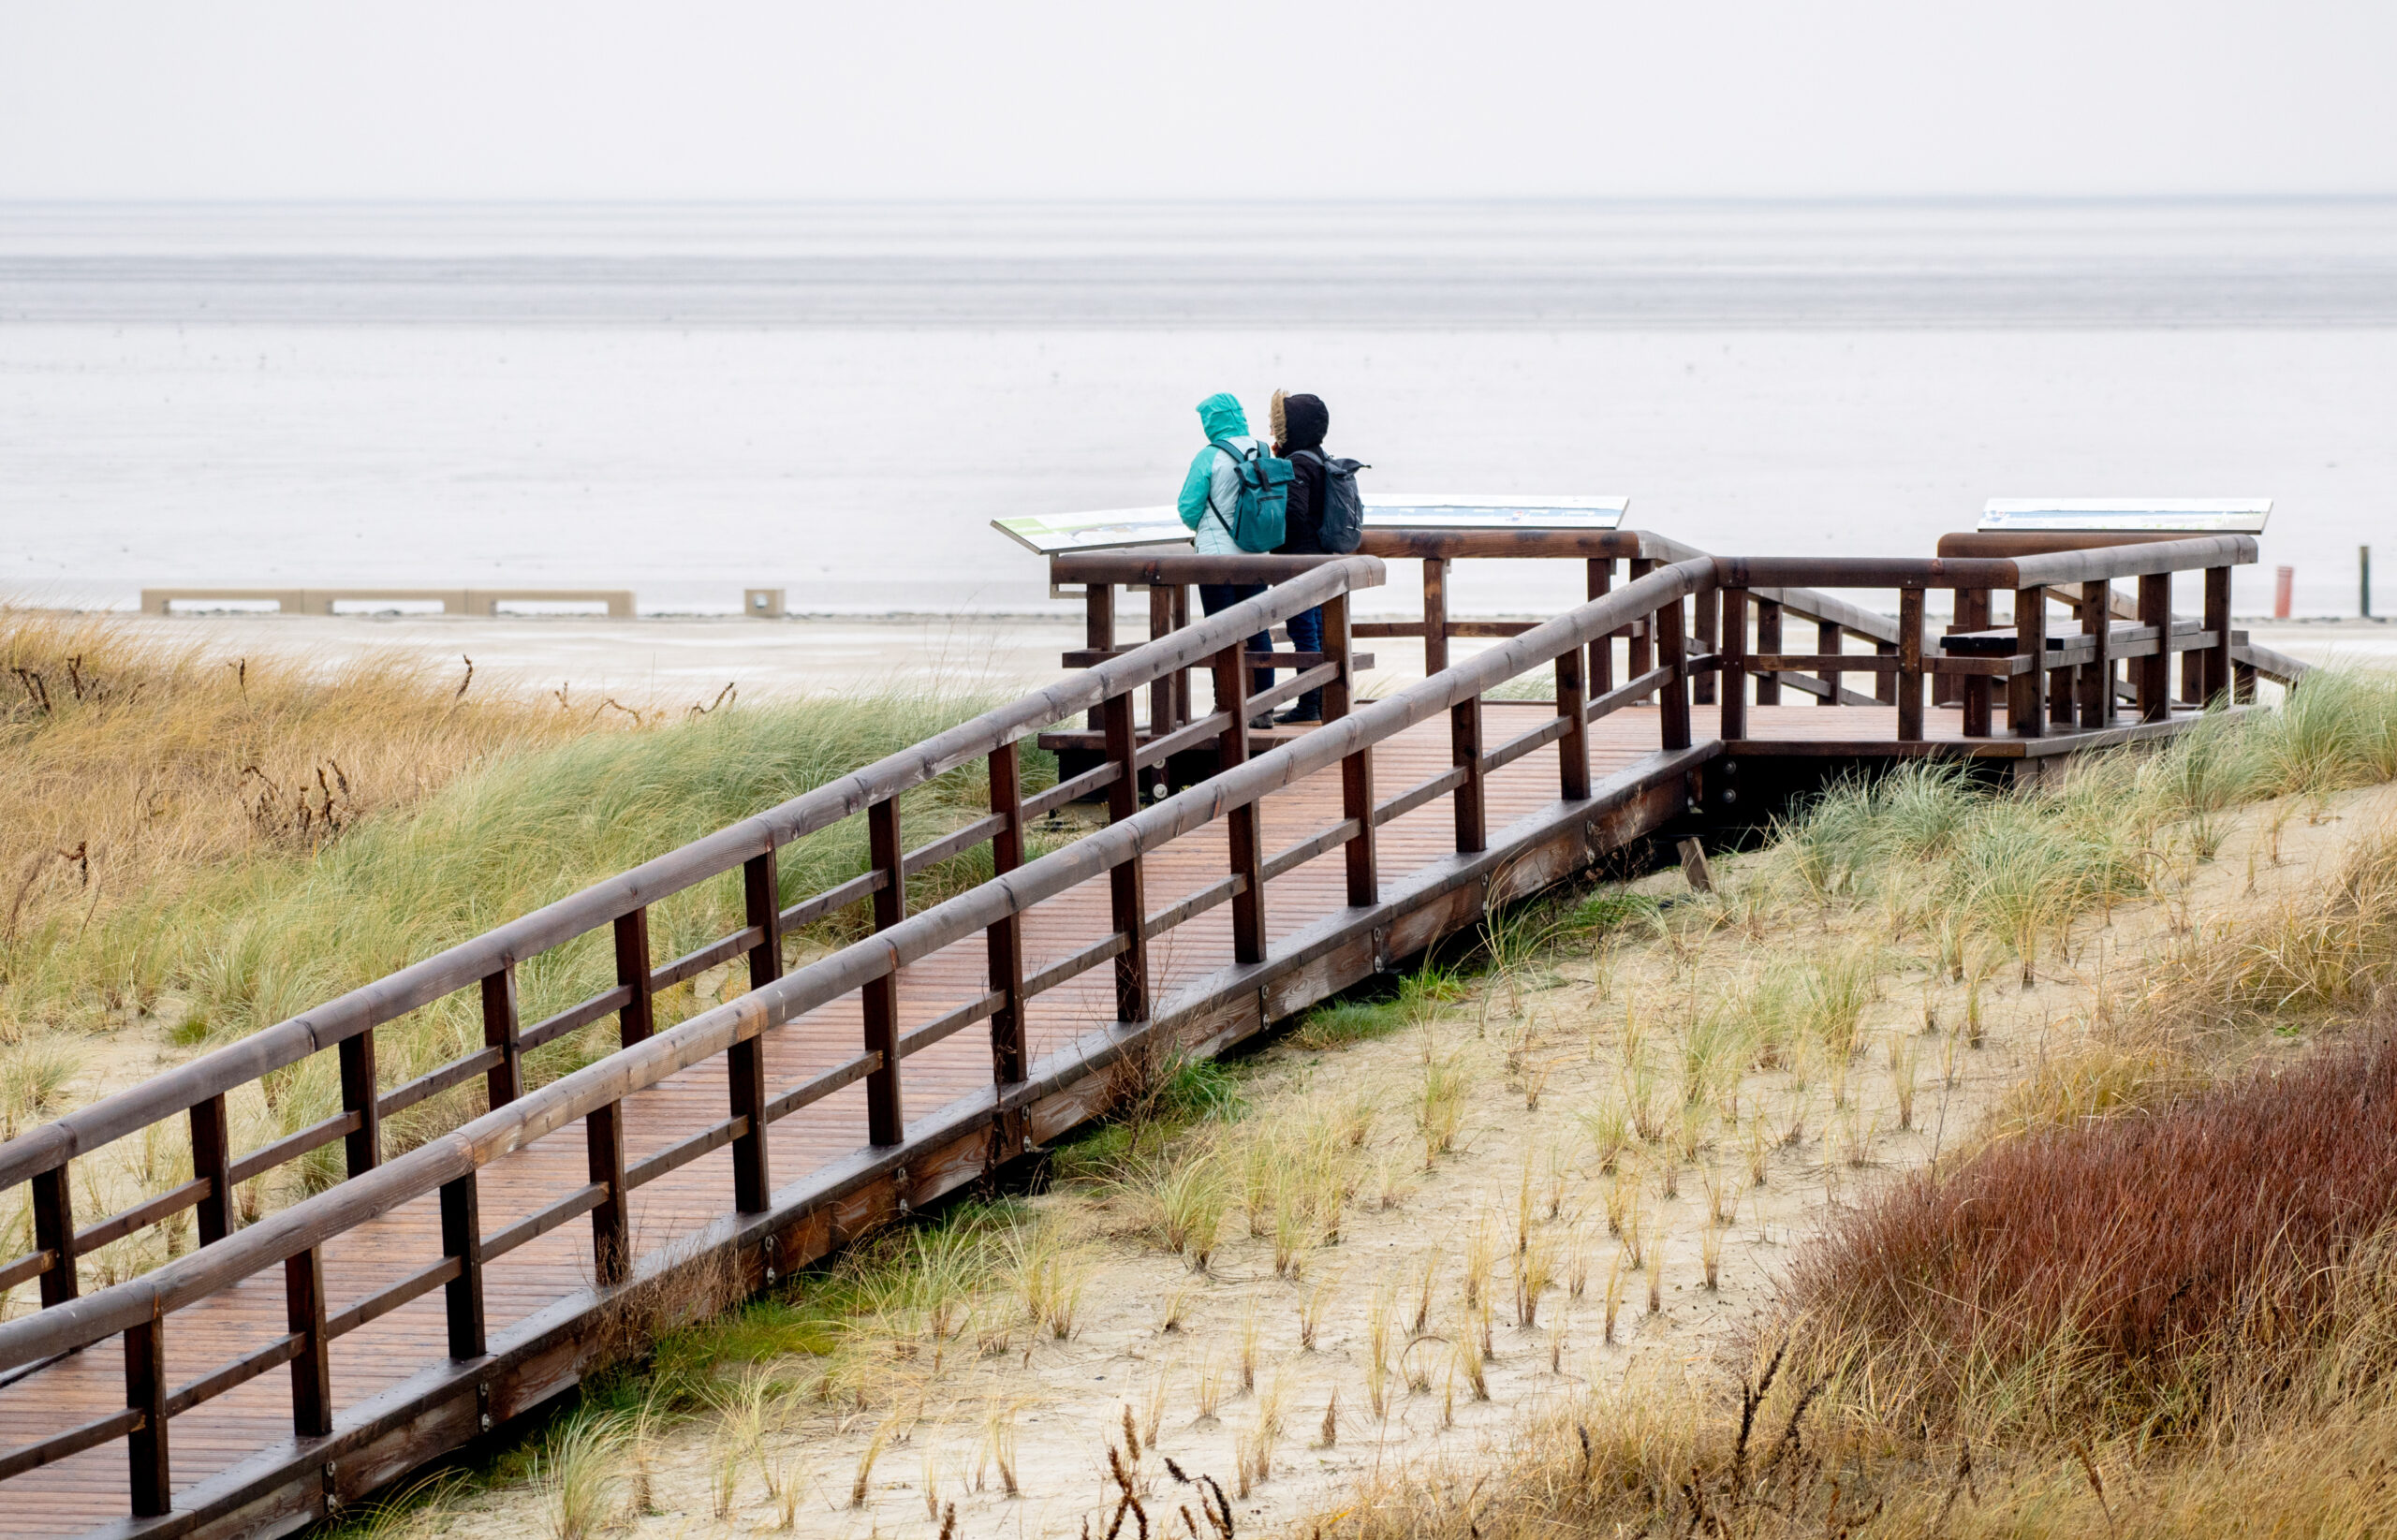 Zwei Frauen stehen bei regnerischem Wetter auf einer Aussichtsplattform am Strand und schauen auf die Nordsee. (Symbolbild)